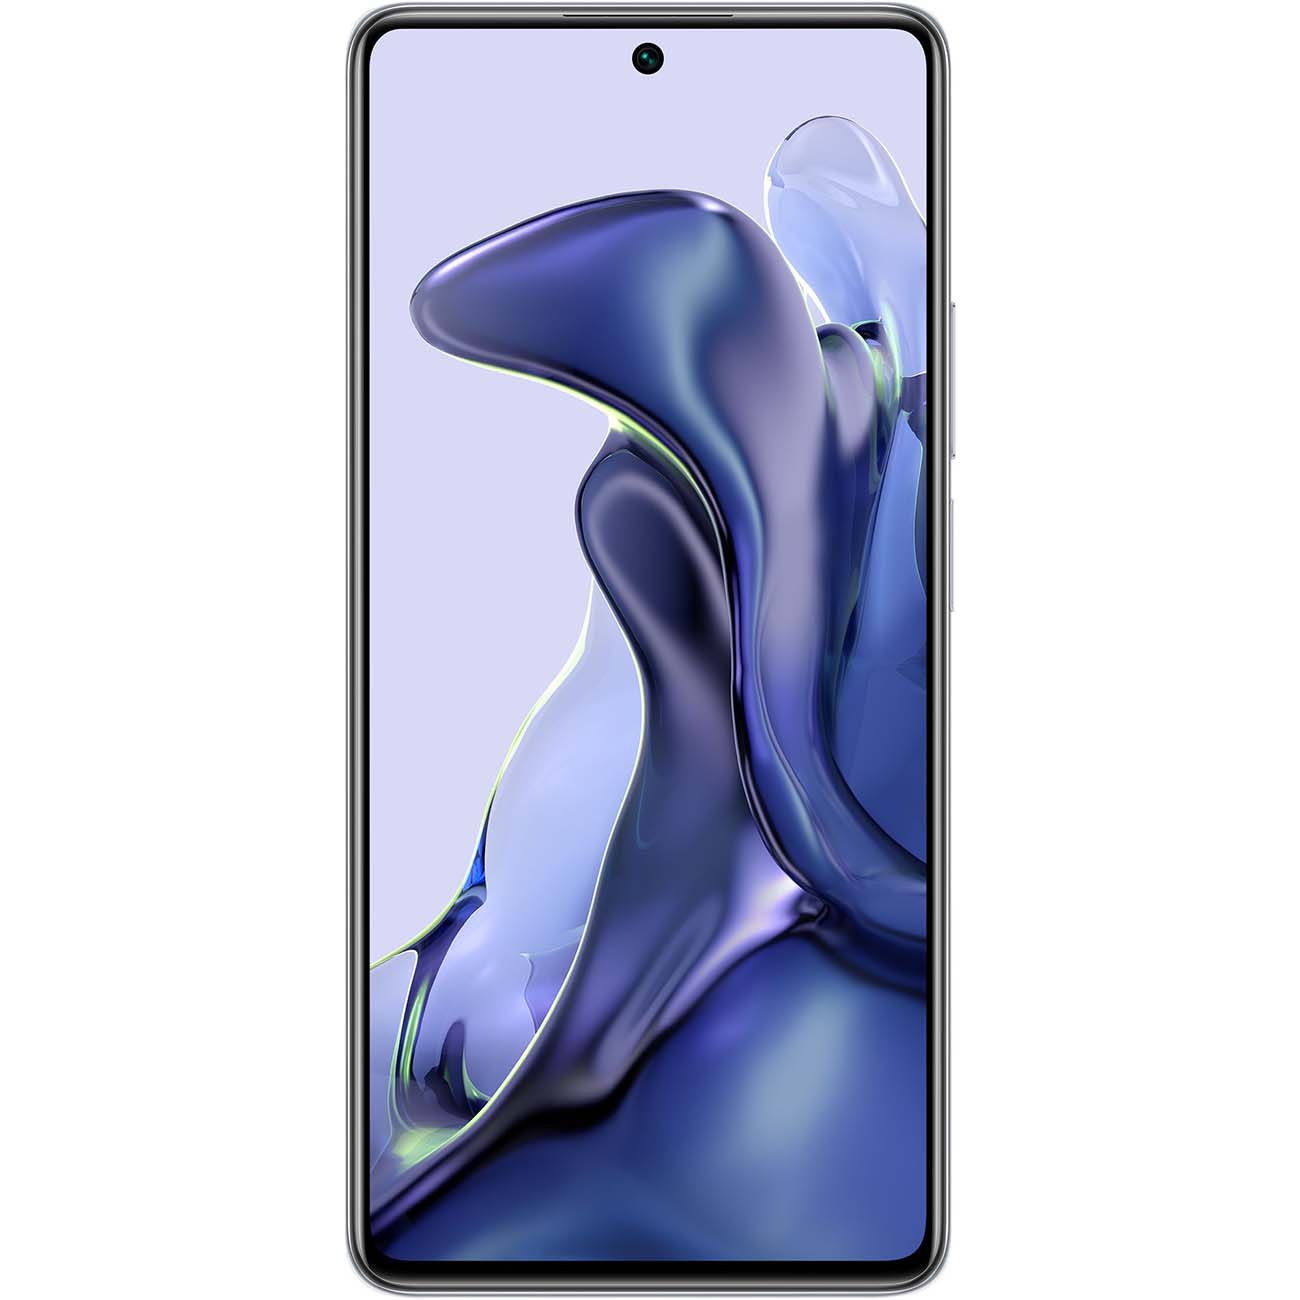 Купить смартфон xiaomi 11t 8gb+128gb white Смартфоны в официальном магазине Apple, Samsung, Xiaomi. iPixel.ru Купить, заказ, кредит, рассрочка, отзывы,  характеристики, цена,  фотографии, в подарок.